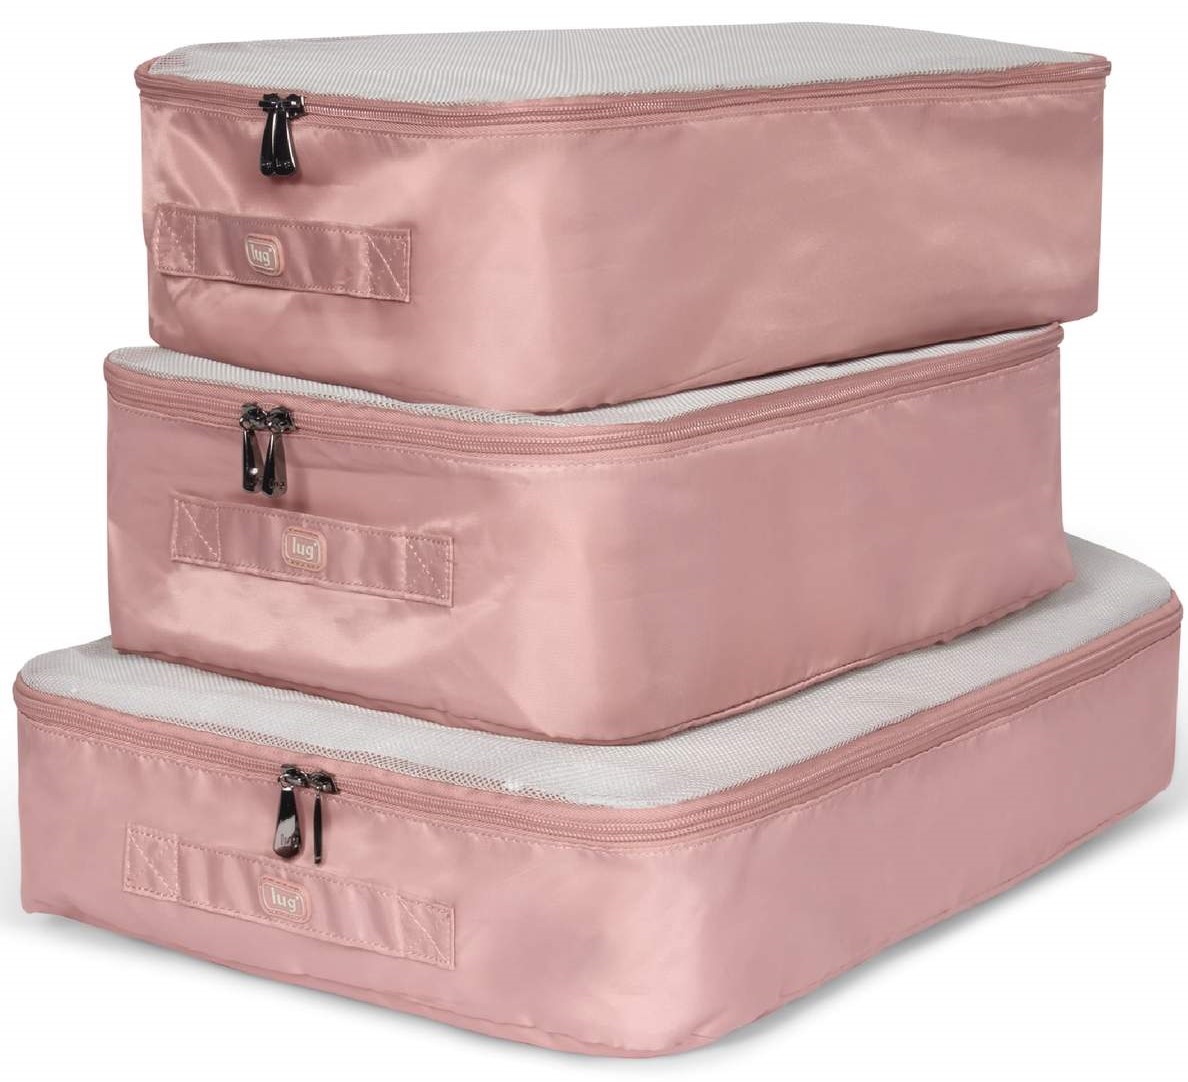 LUG - Cargo - 3 pc Packing Set - Blush Pink